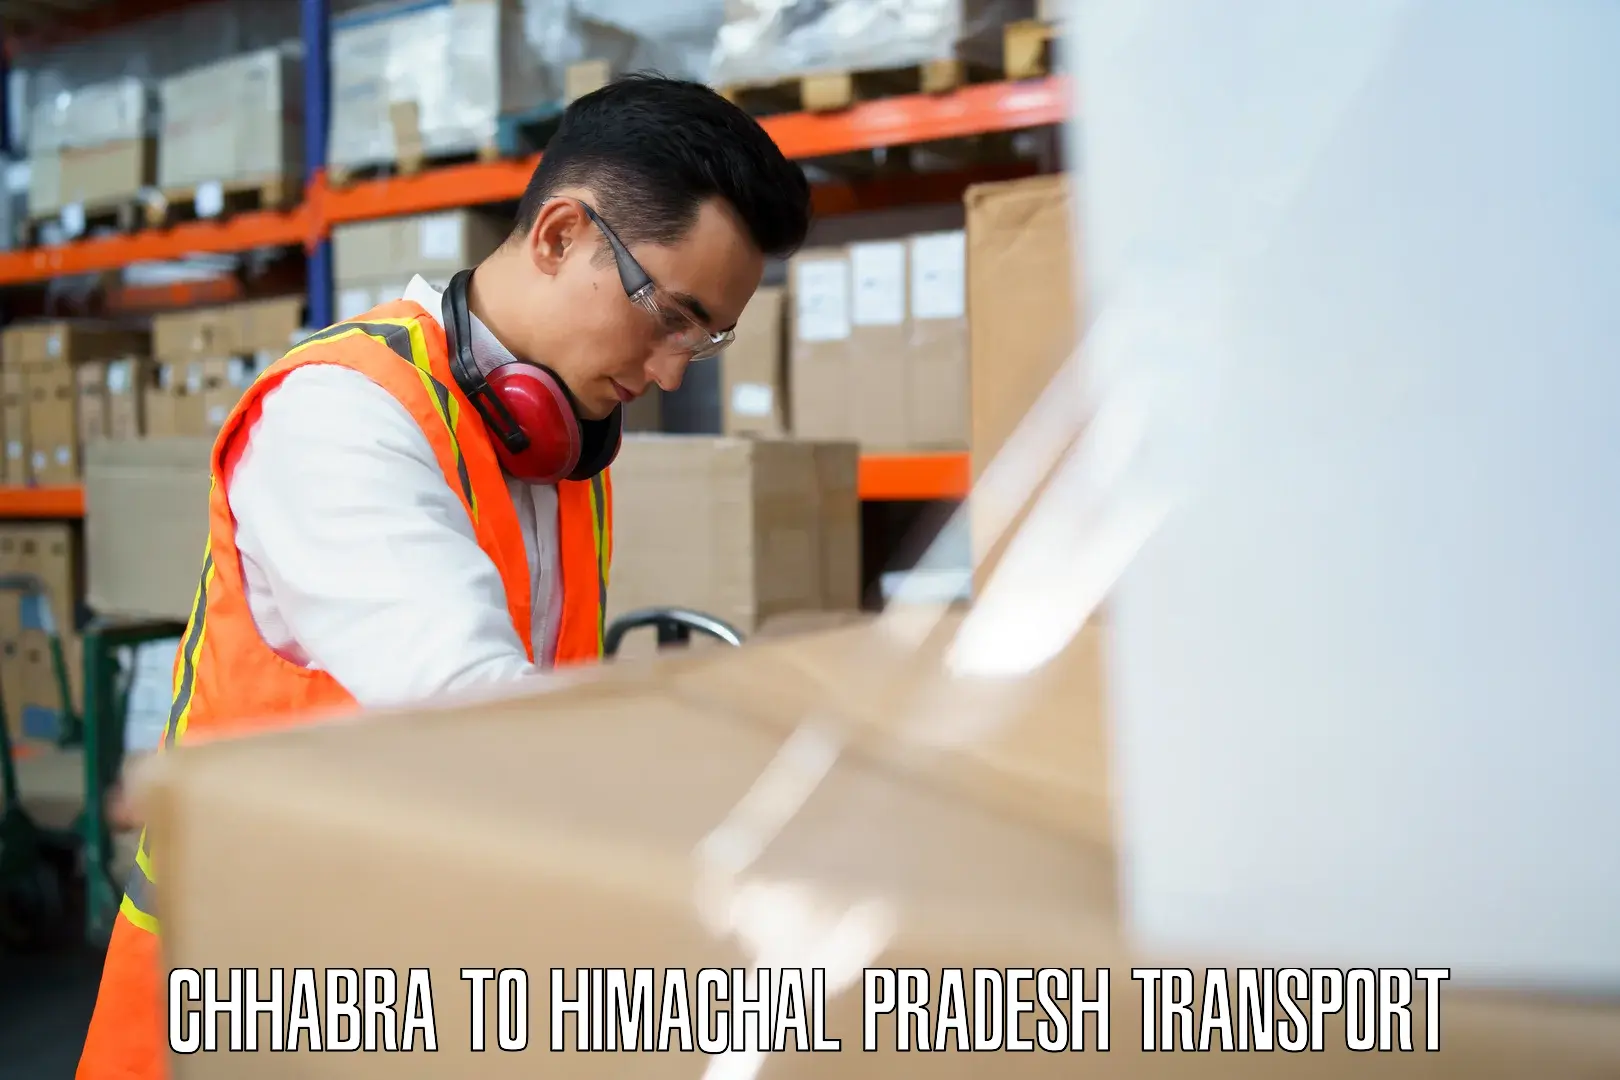 Shipping partner Chhabra to Karsog